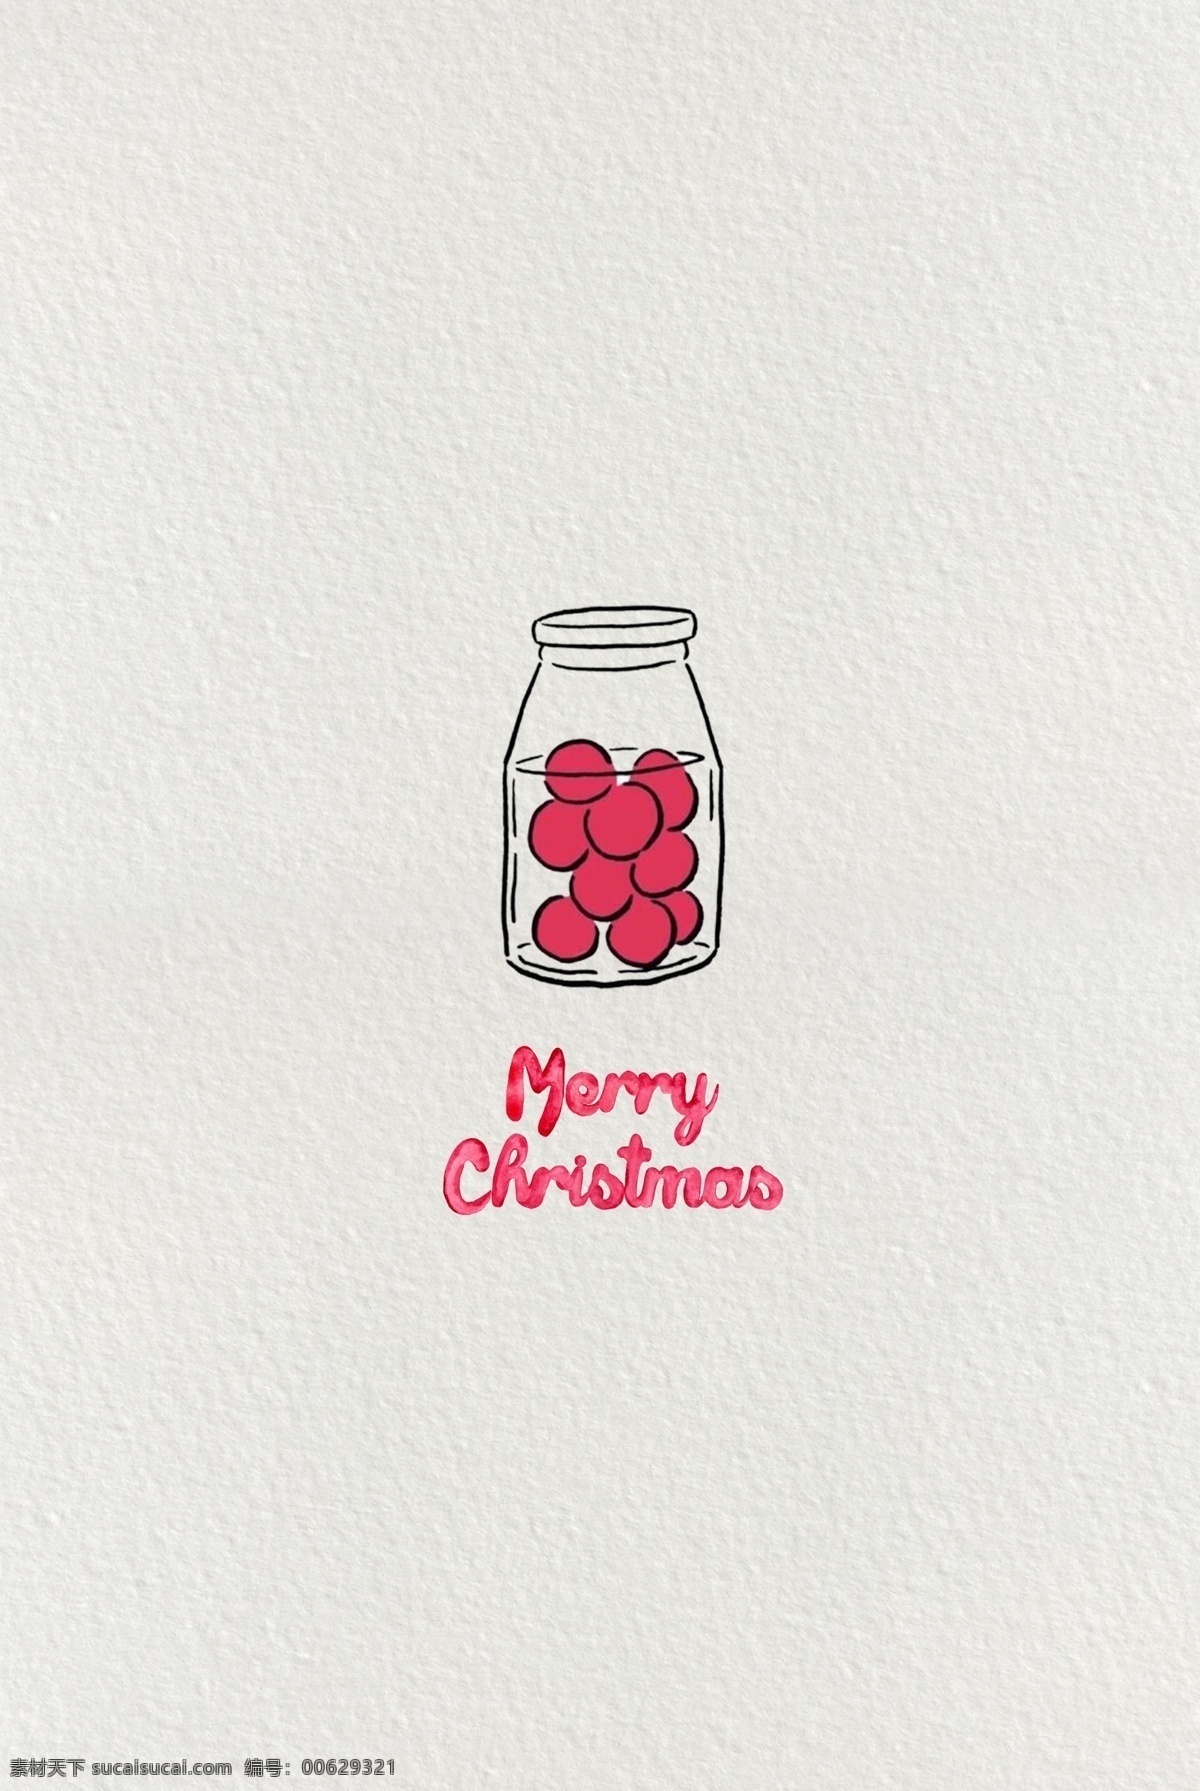 简约 白色 指纹 卡通 圣诞 手 礼 手提袋 圣诞节 食品 手绘 食物 圣诞快乐 西方 节日 红色 玫红 纸纹 纸质